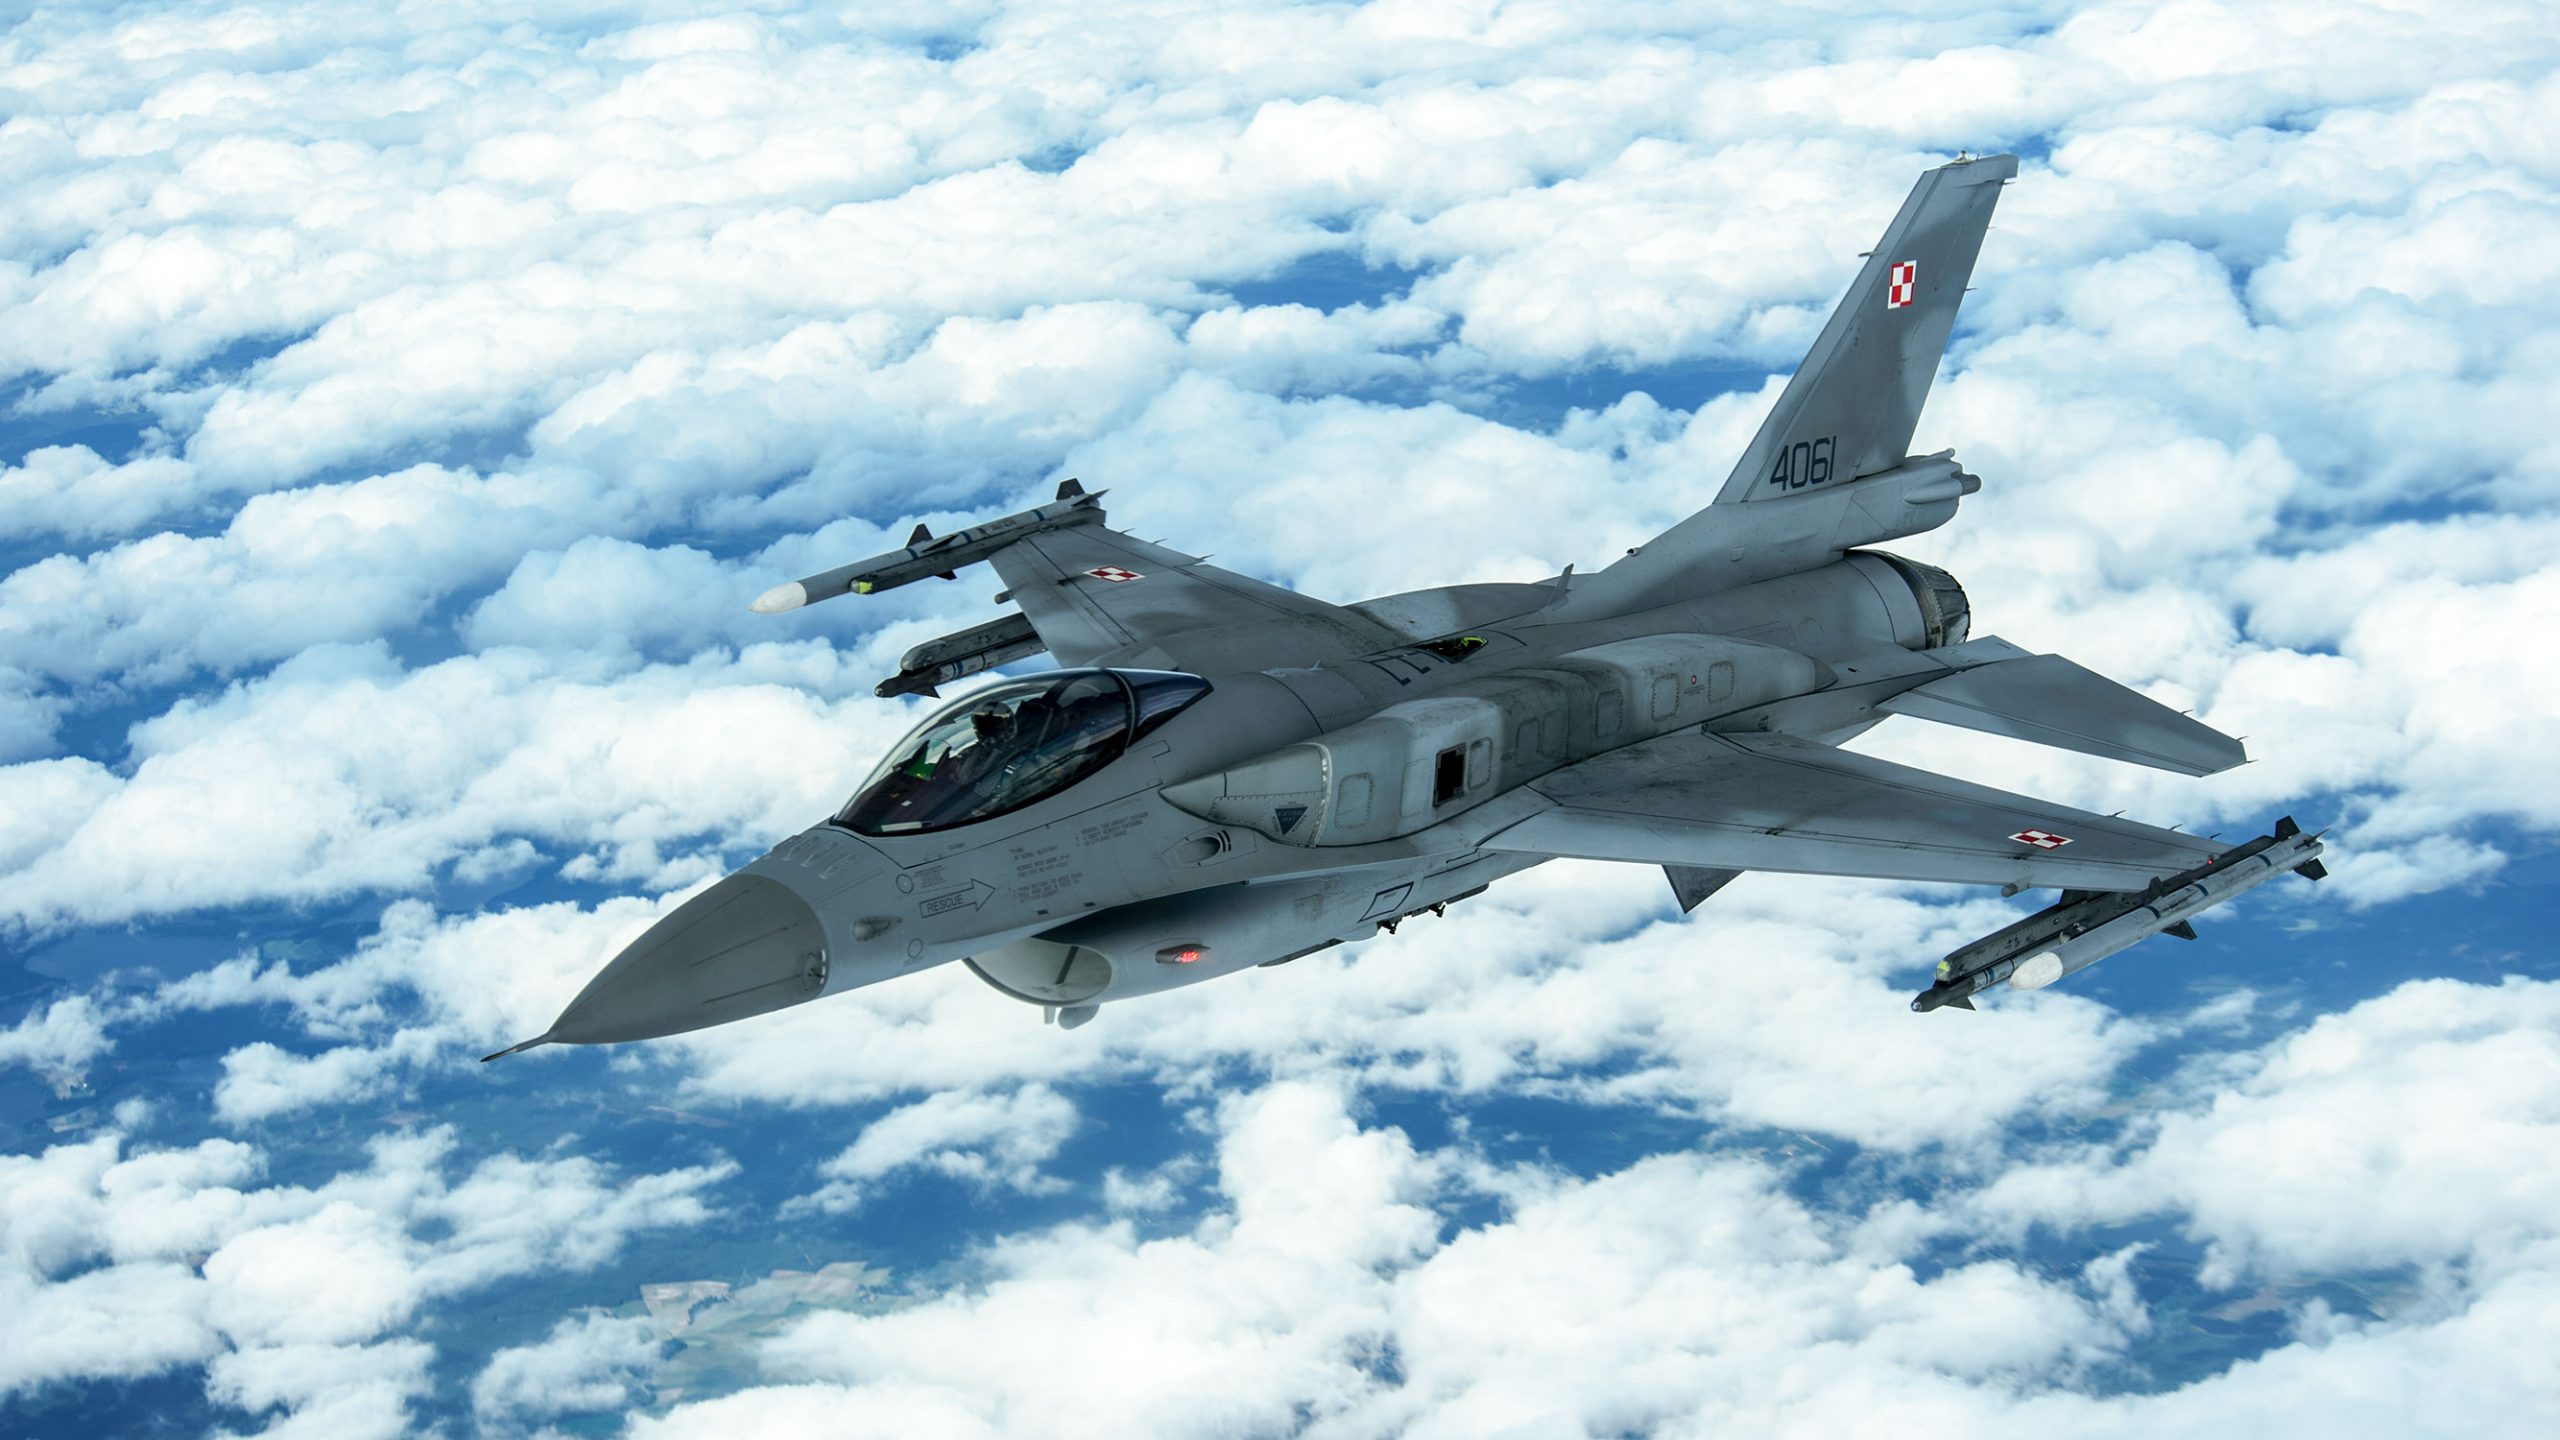 Πολωνικό αεροσκάφος παραβίασε τον εναέριο χώρο της Λευκορωσίας